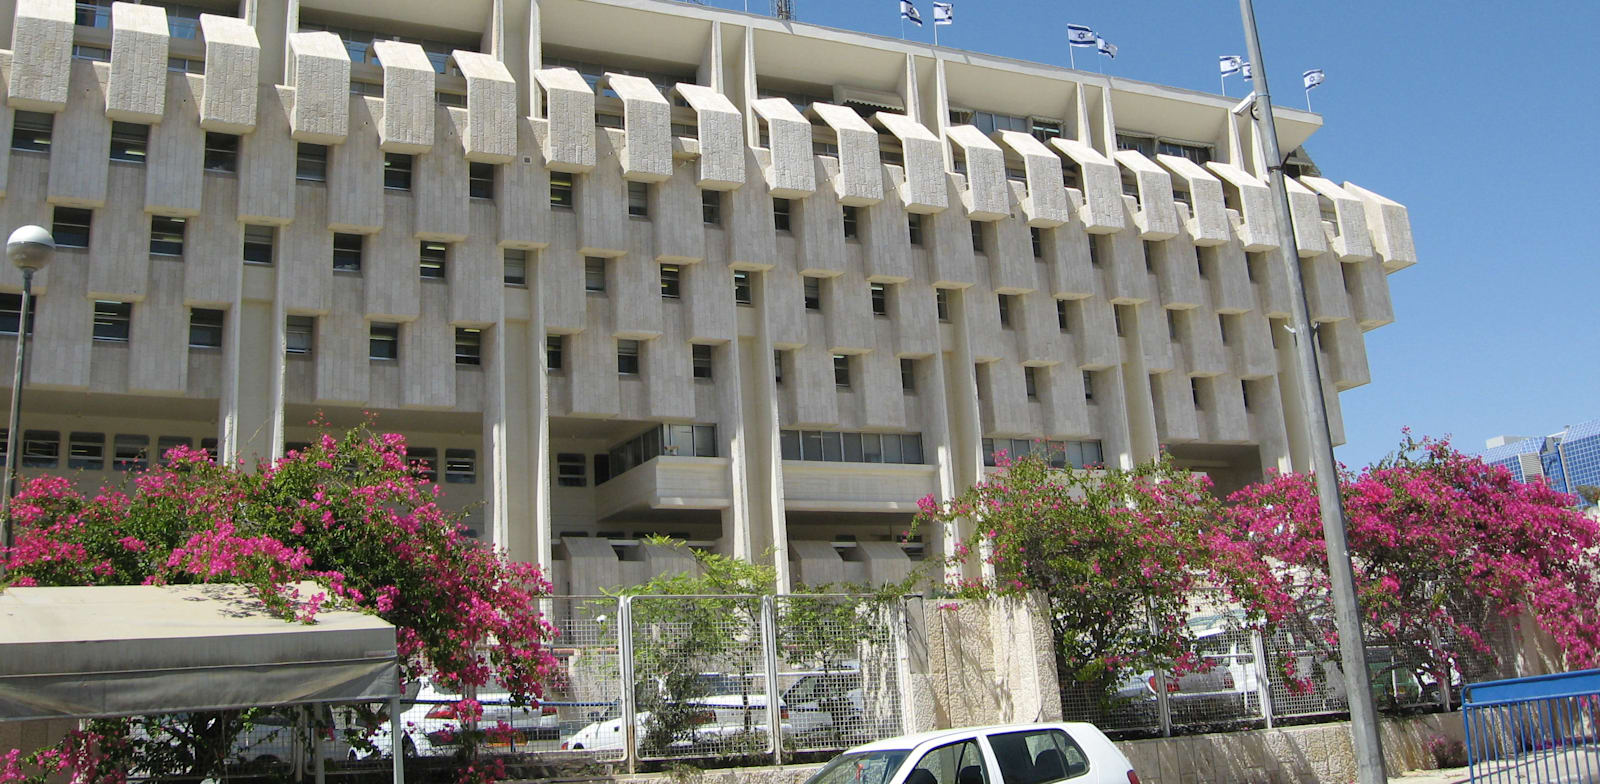 בניין בנק ישראל בירושלים / צילום: אורית דיל